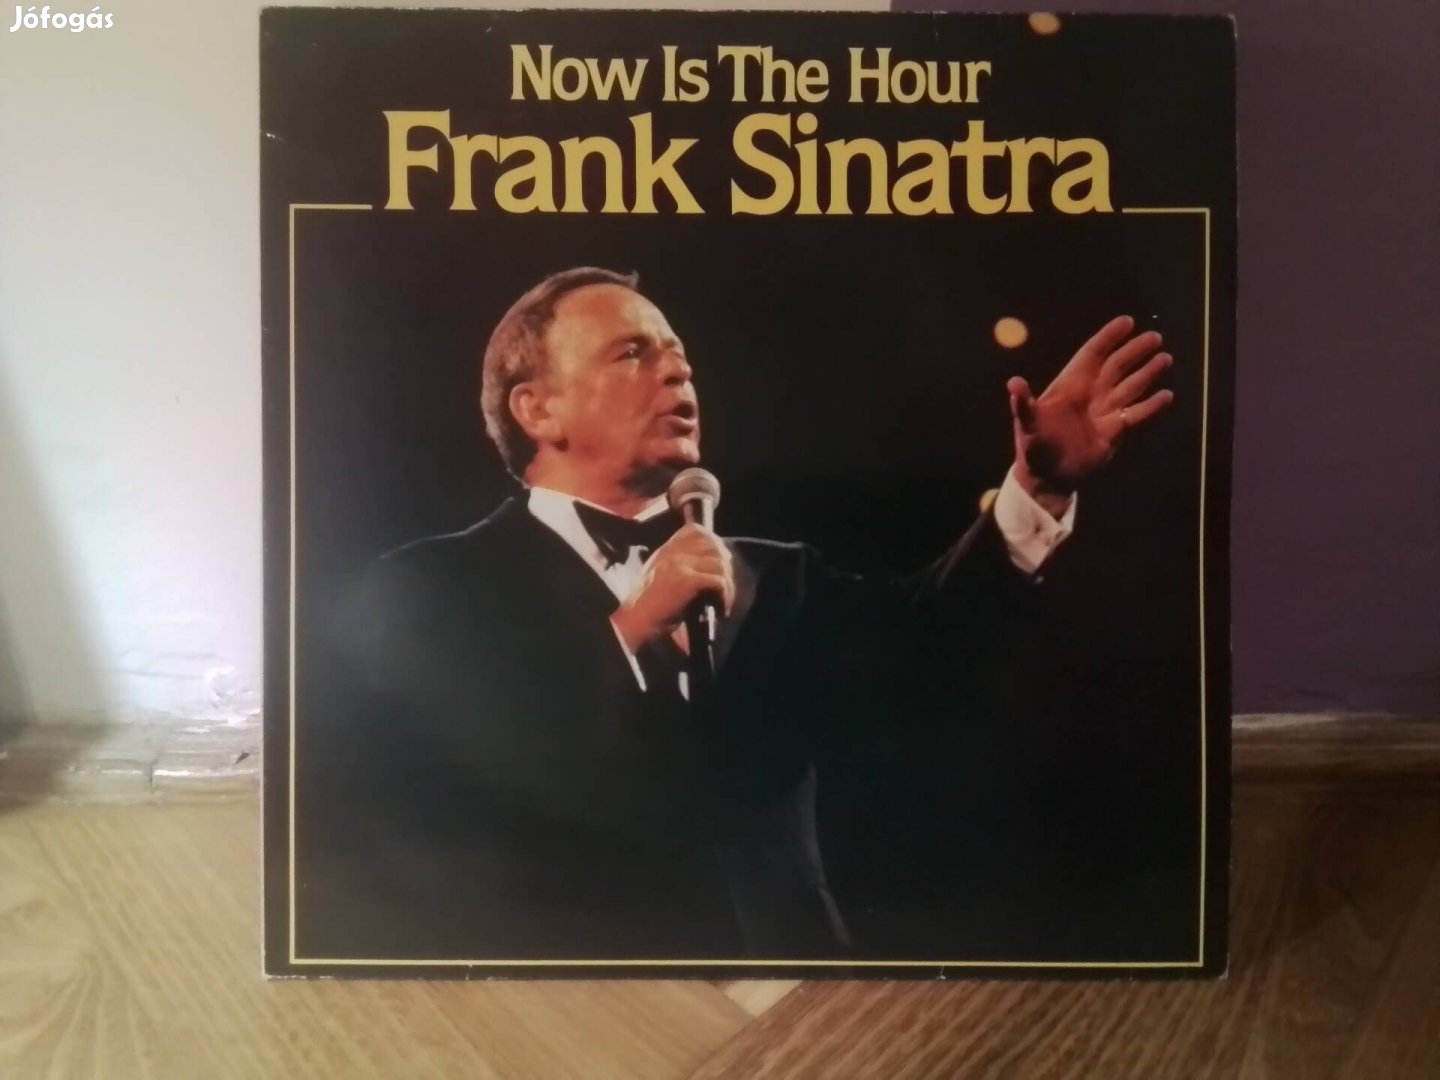 Eladó Frank Sinatra nagylemez (lp, vinly).